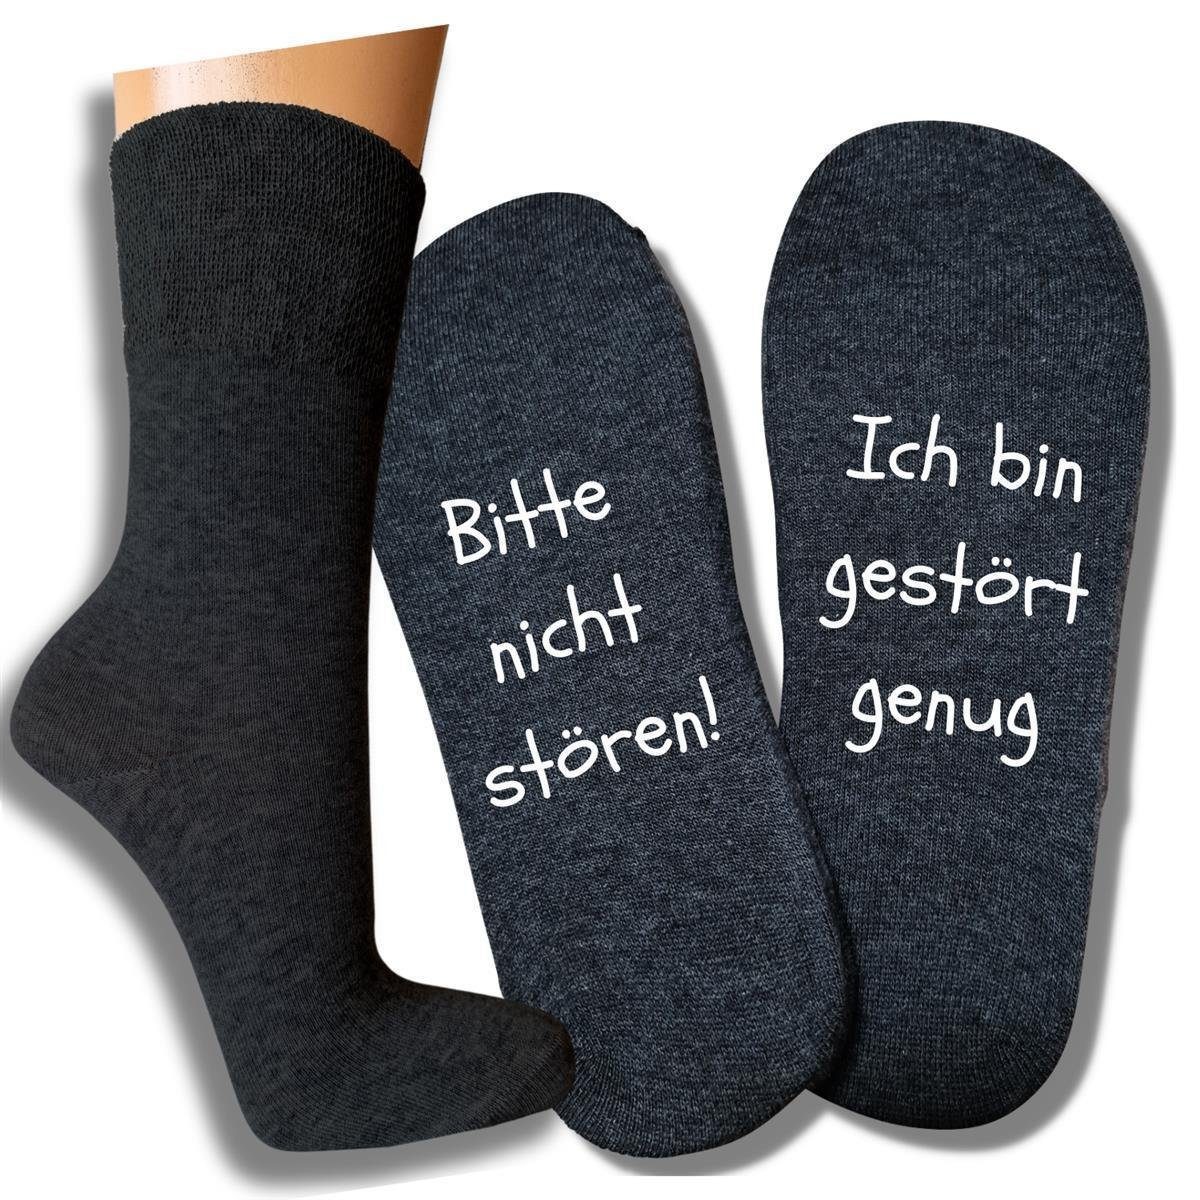 bentini Basicsocken Spruchsocken Bitte nicht stören! (1-Paar) anthrazitmelange | Lustige Socken